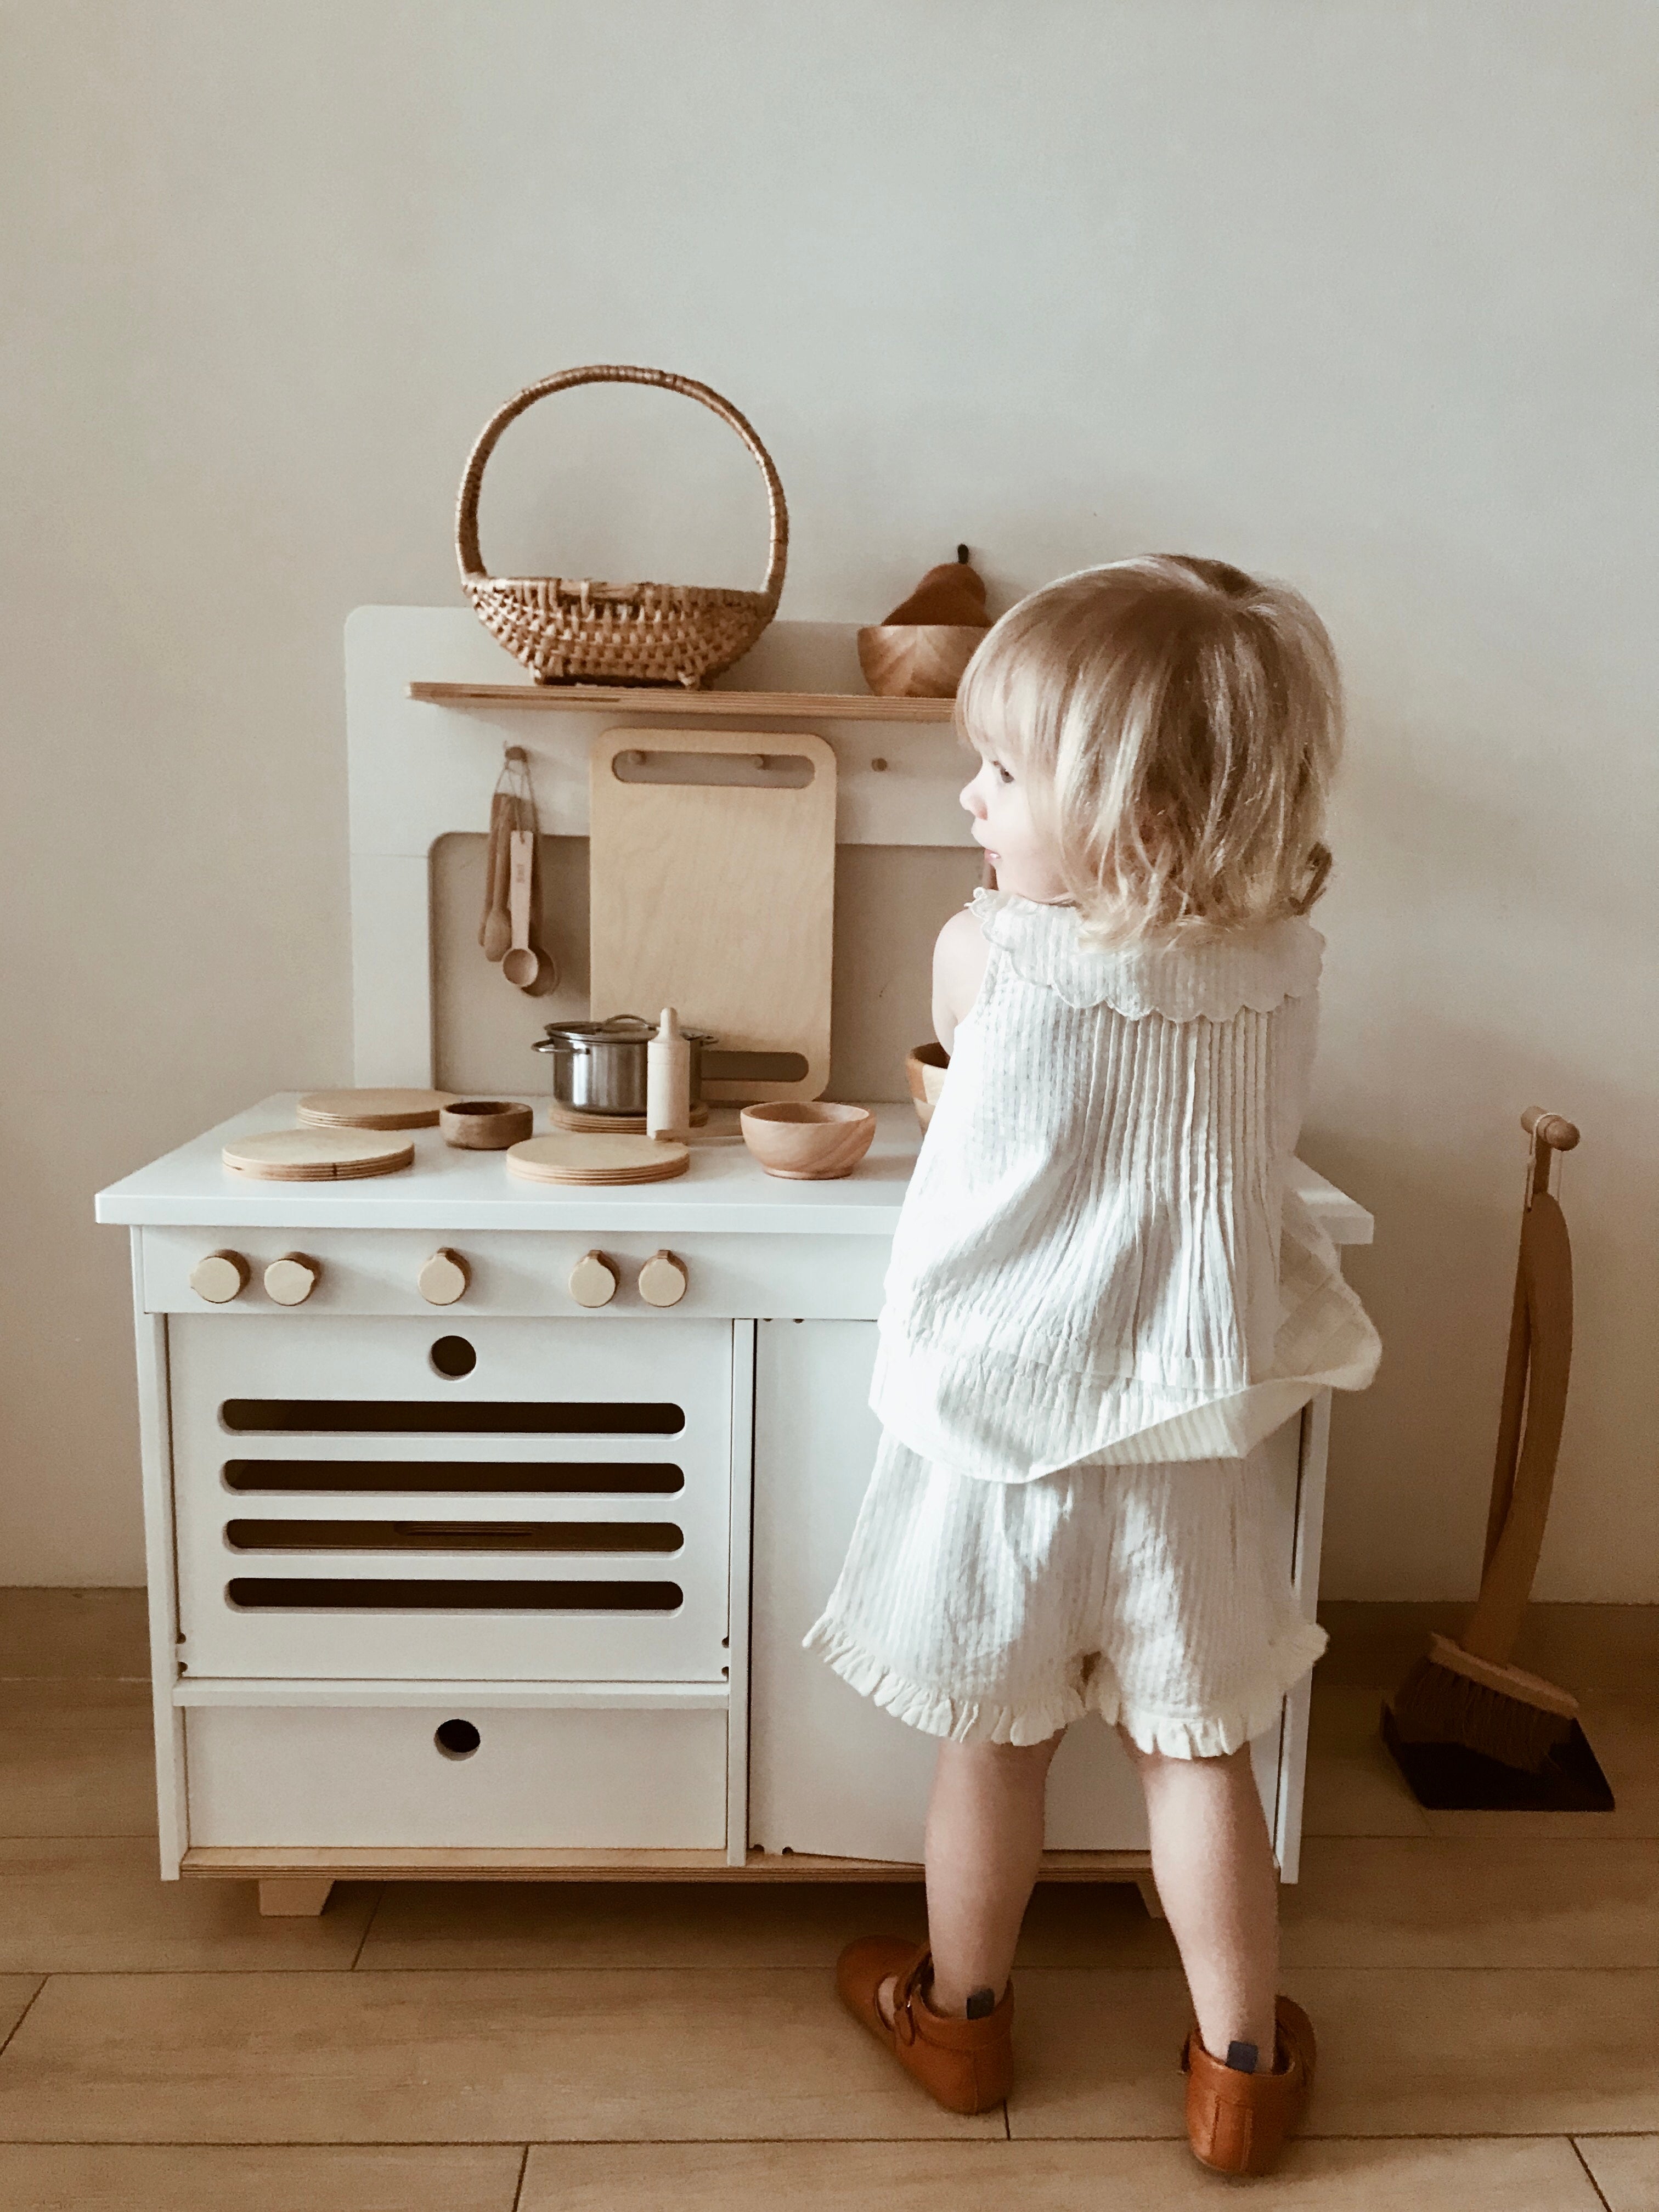 Midmini Die Ultimative Montessori Spielküche - Eleganz für junge Gourmets 🌟